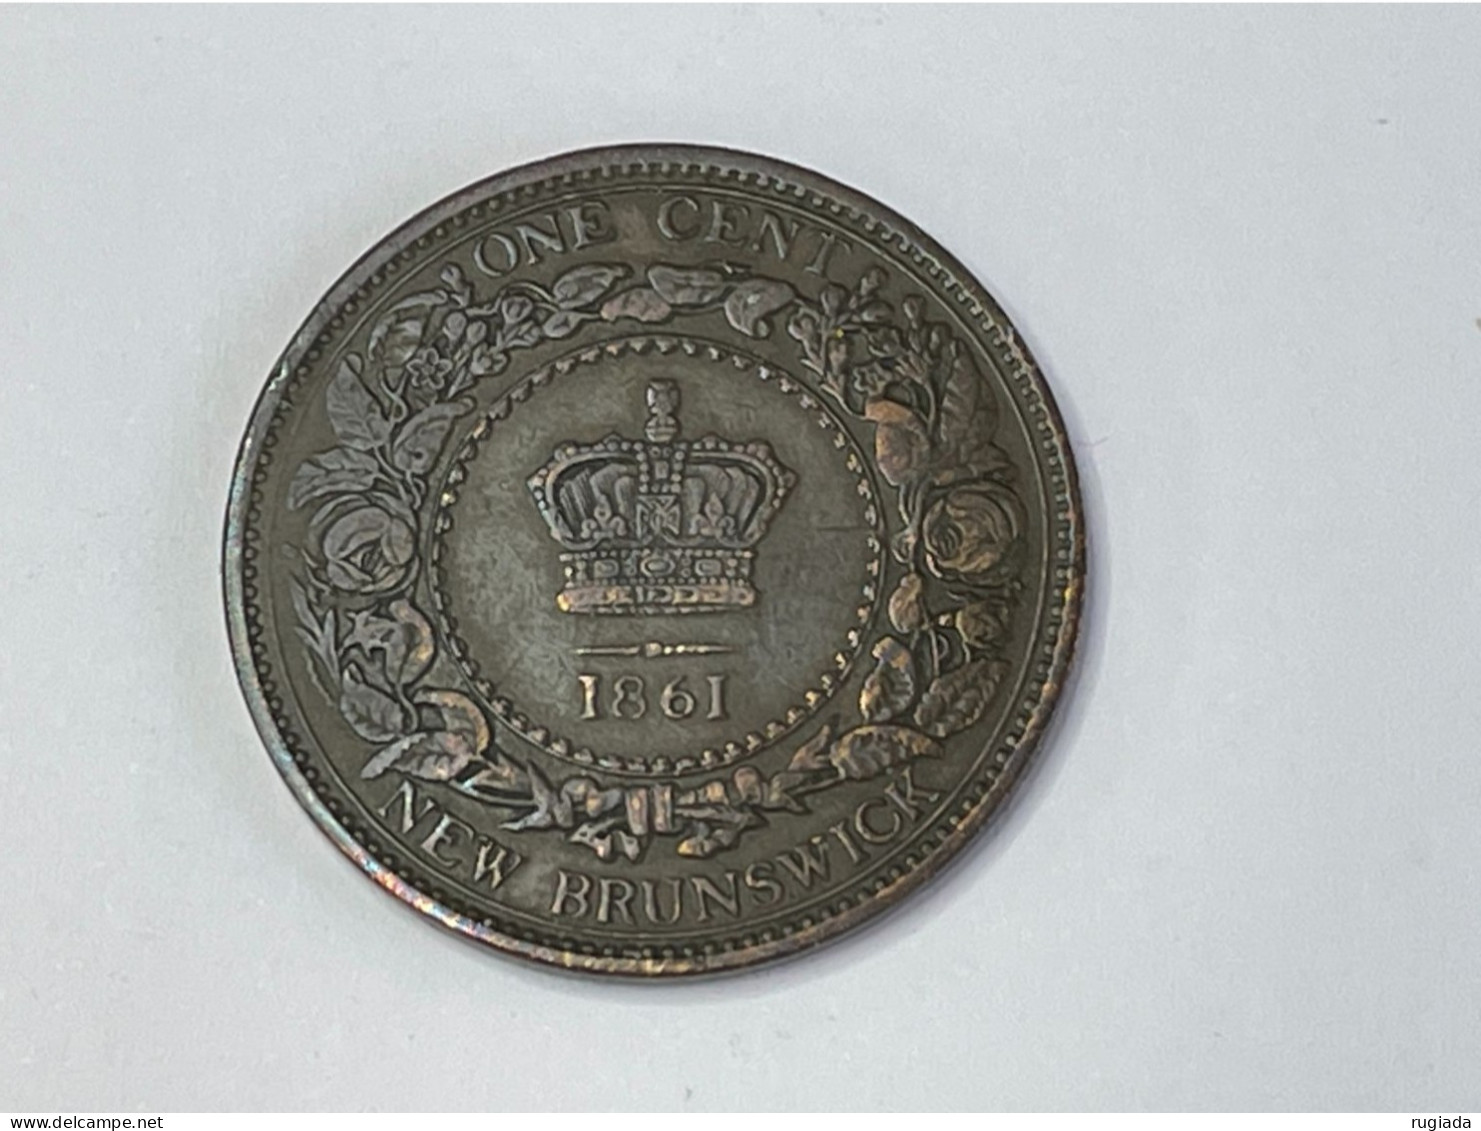 1861 Canada New Brunswick Queen Victoria One Cent, VF Very Fine - Canada